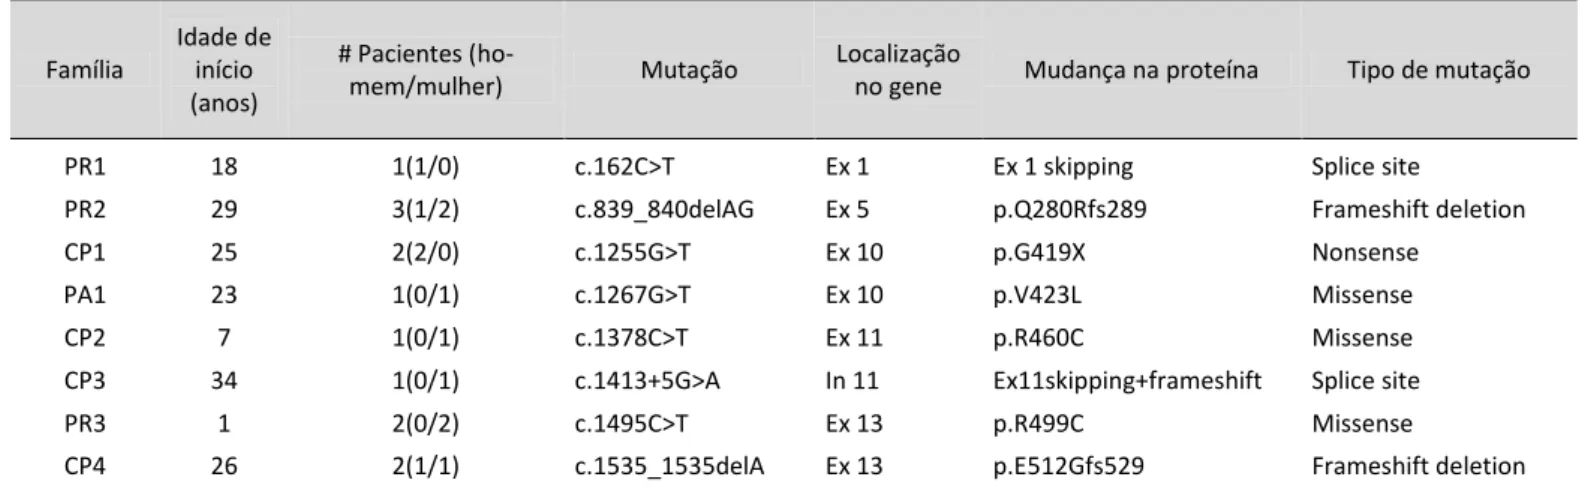 Tabela  5.  Mutações  identificadas  no  gene  SPAST  em  12  famílias  brasileiras  com  paraplegia  espástica  hereditária  autossômica dominante  [113] 